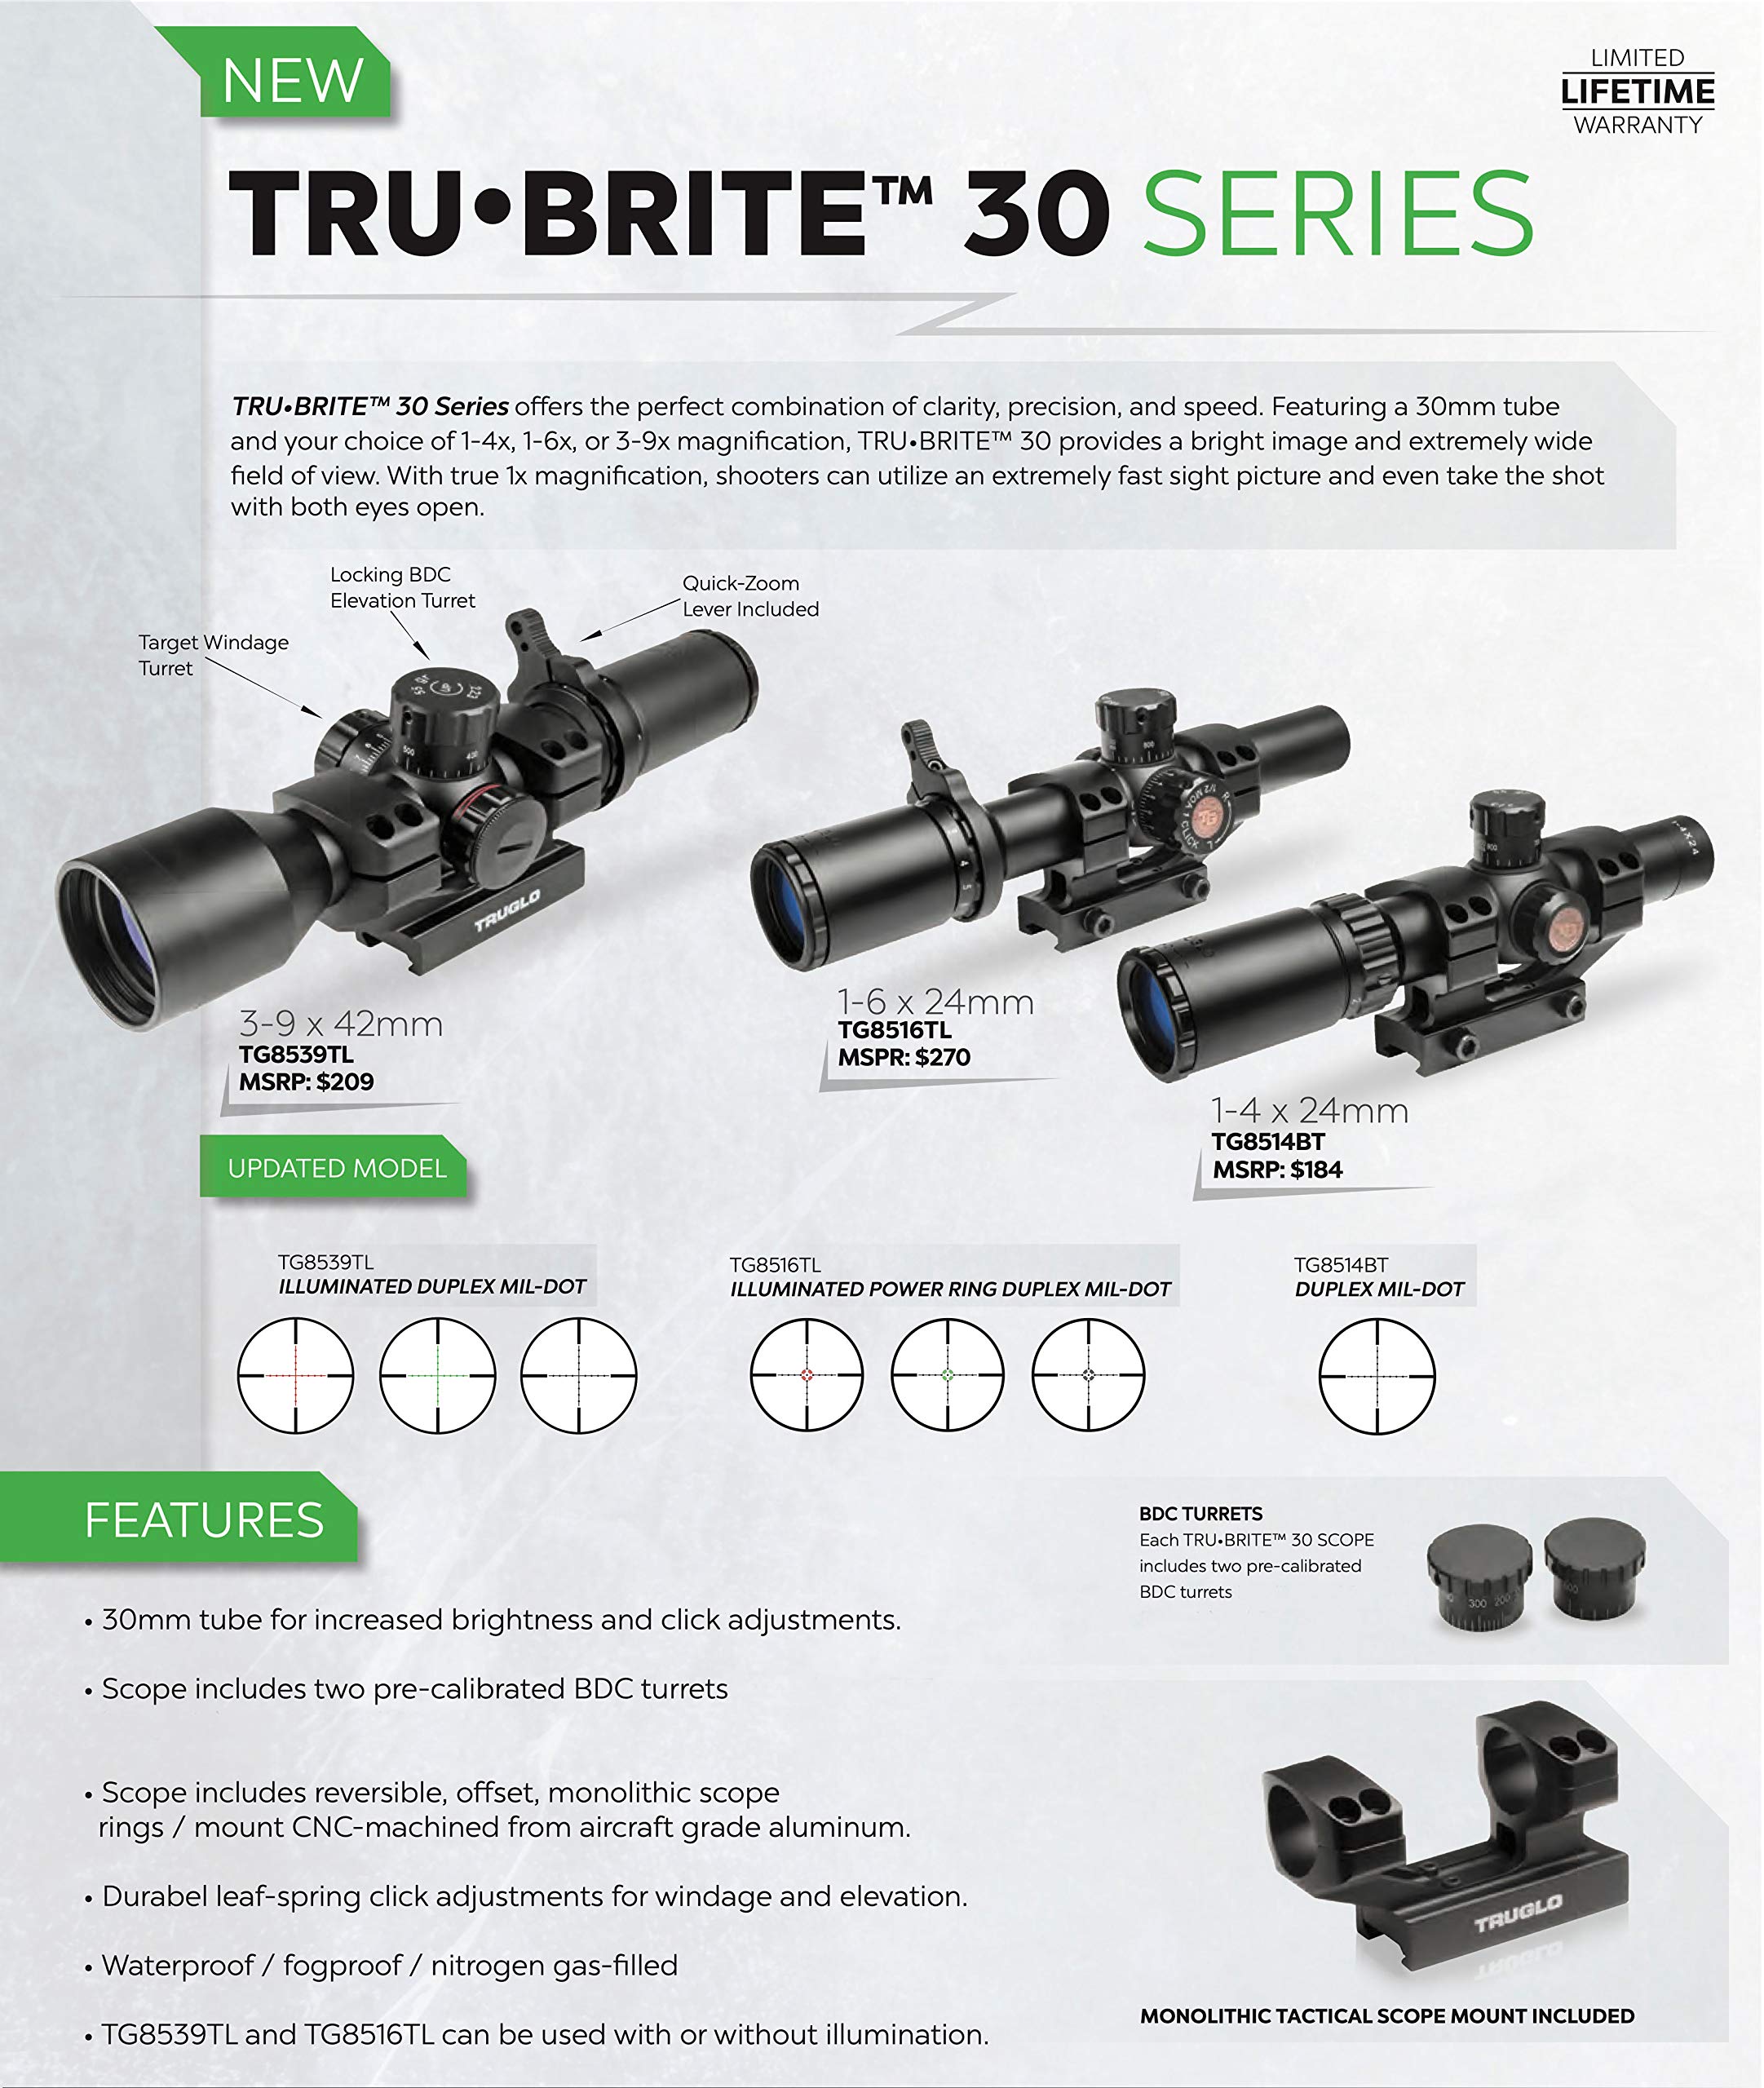 TRUGLO TRU-BRITE 30 Series Illuminated Tactical Rifle Scope - Includes Scope Mount, 3-9 x 42mm, Black